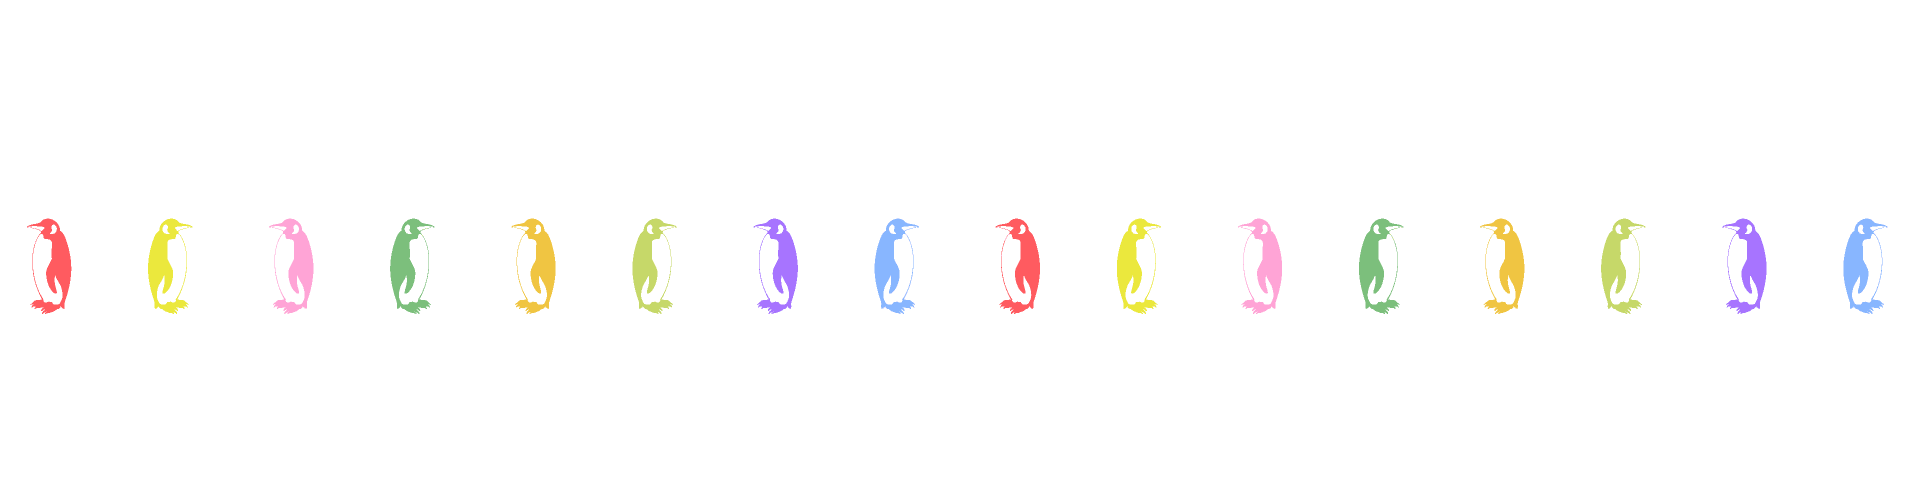 色彩鲜艳的企鹅剪影线条